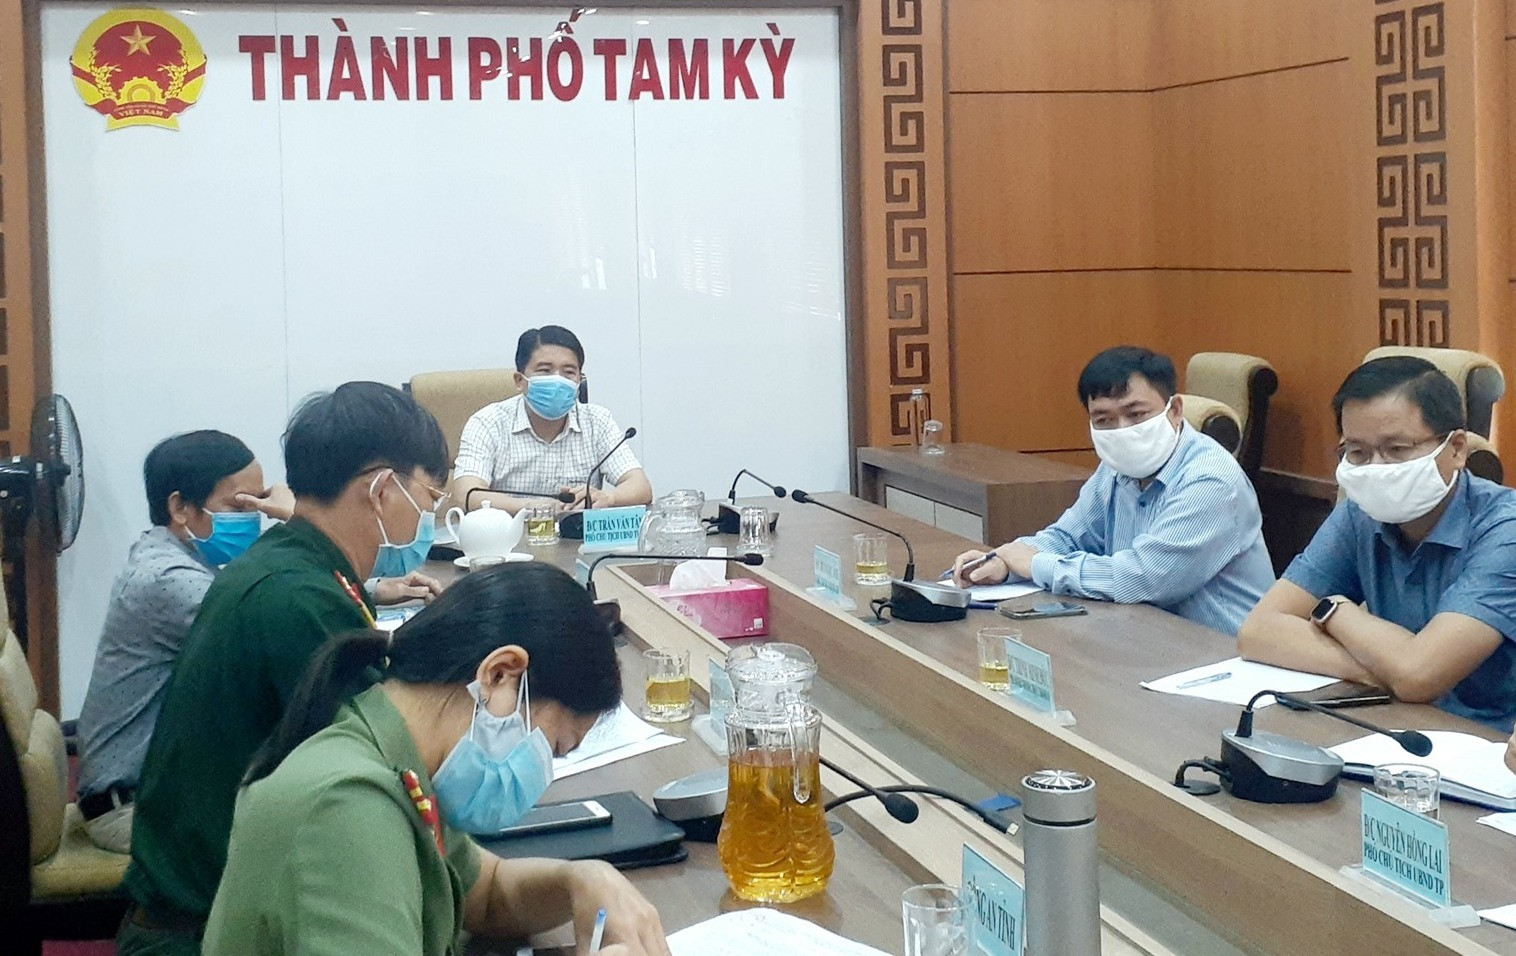 Phó Chủ tịch UBND tỉnh Trần Văn Tân chủ trì buổi làm việc cùng UBND TP. Tam Kỳ.